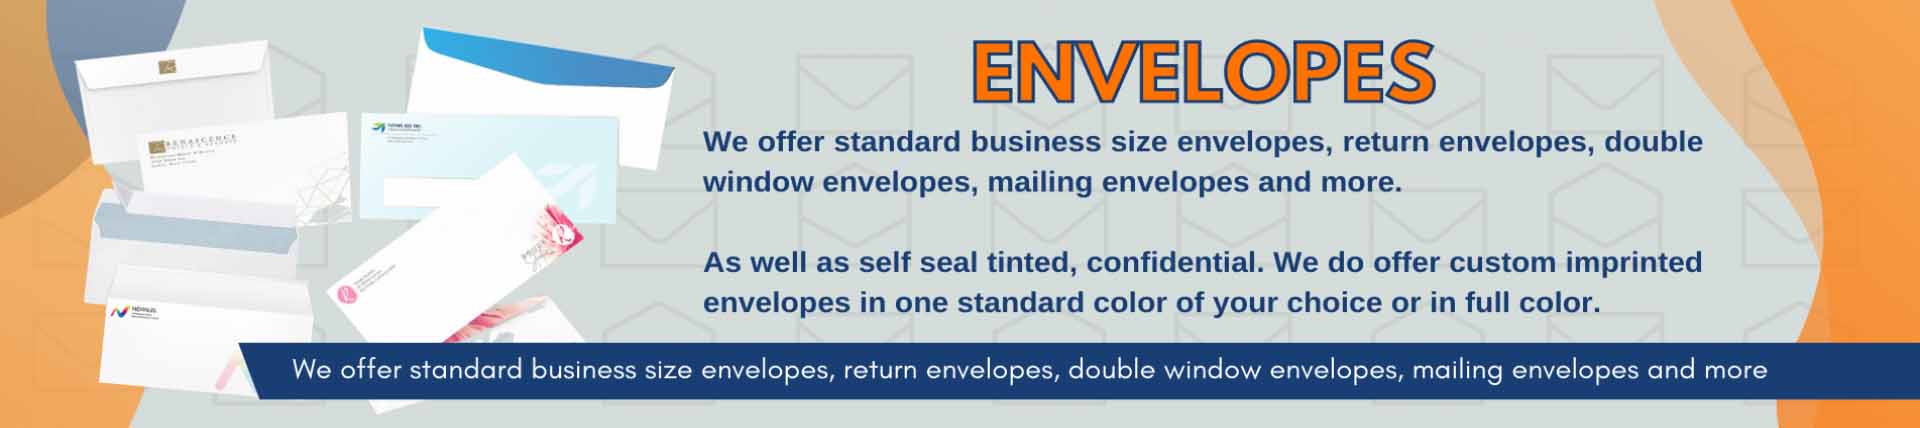 Envelopes1.jpg